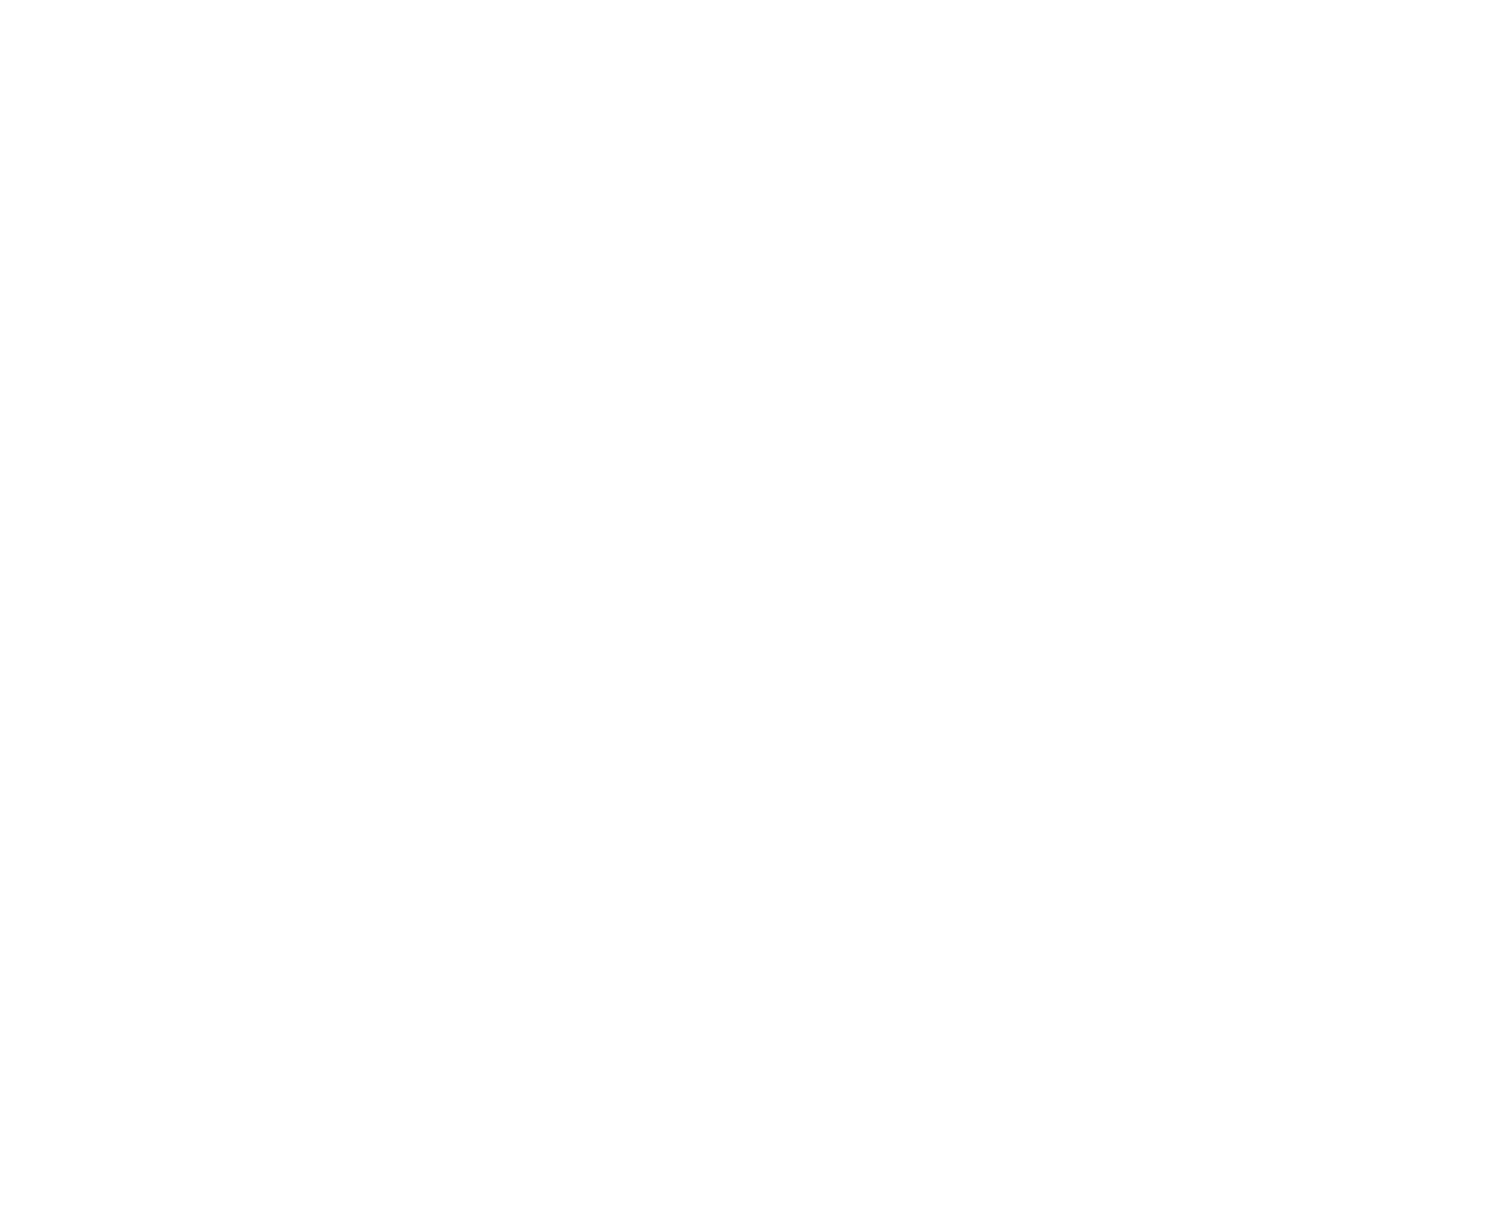 Matthews Presbyterian Church Child Development Center